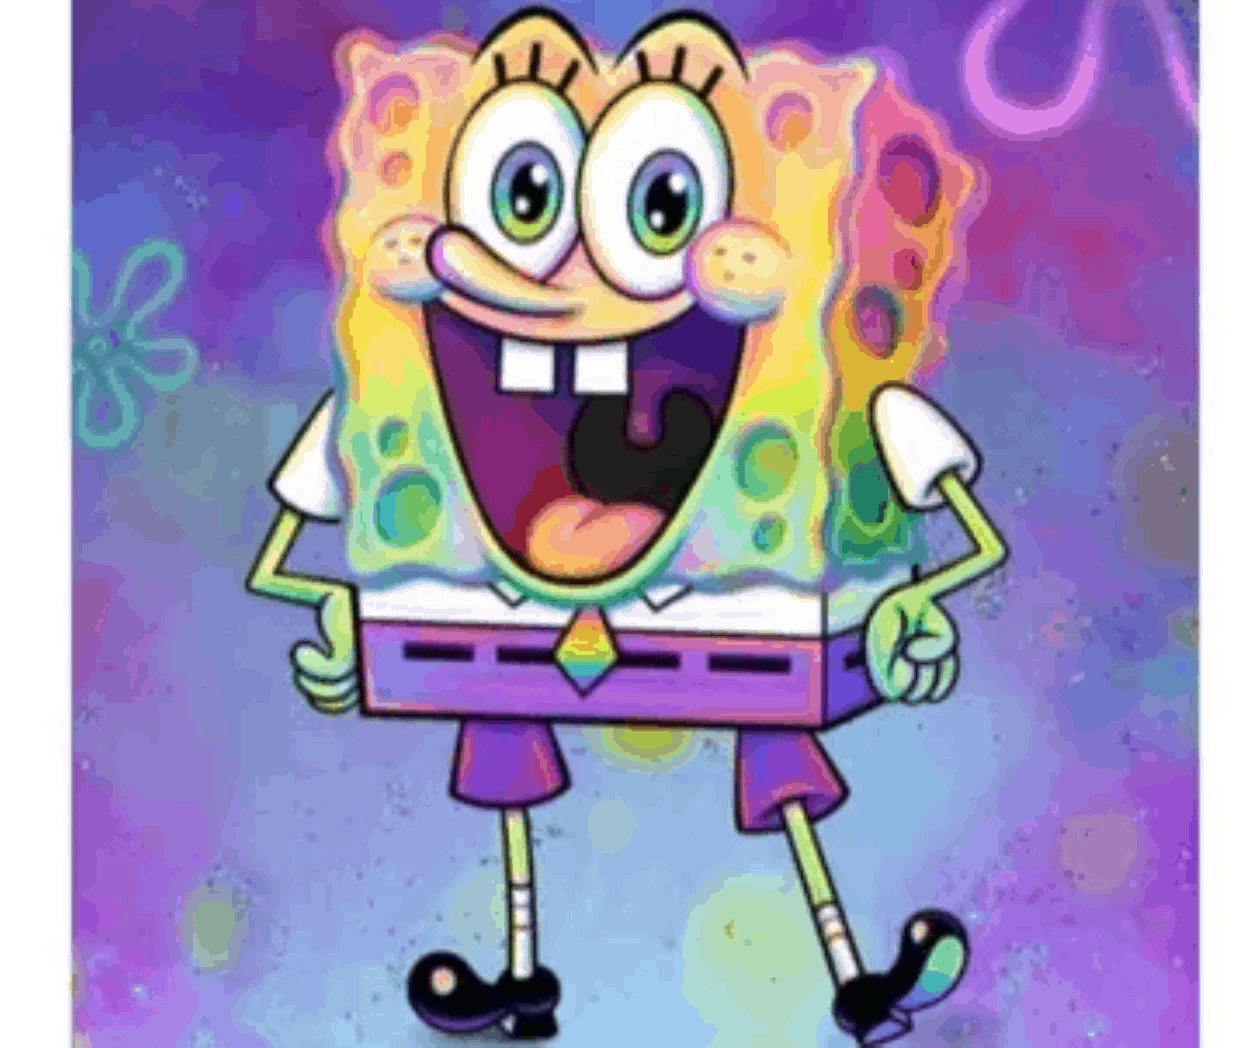 Nickelodeon confirma que Bob Esponja es gay